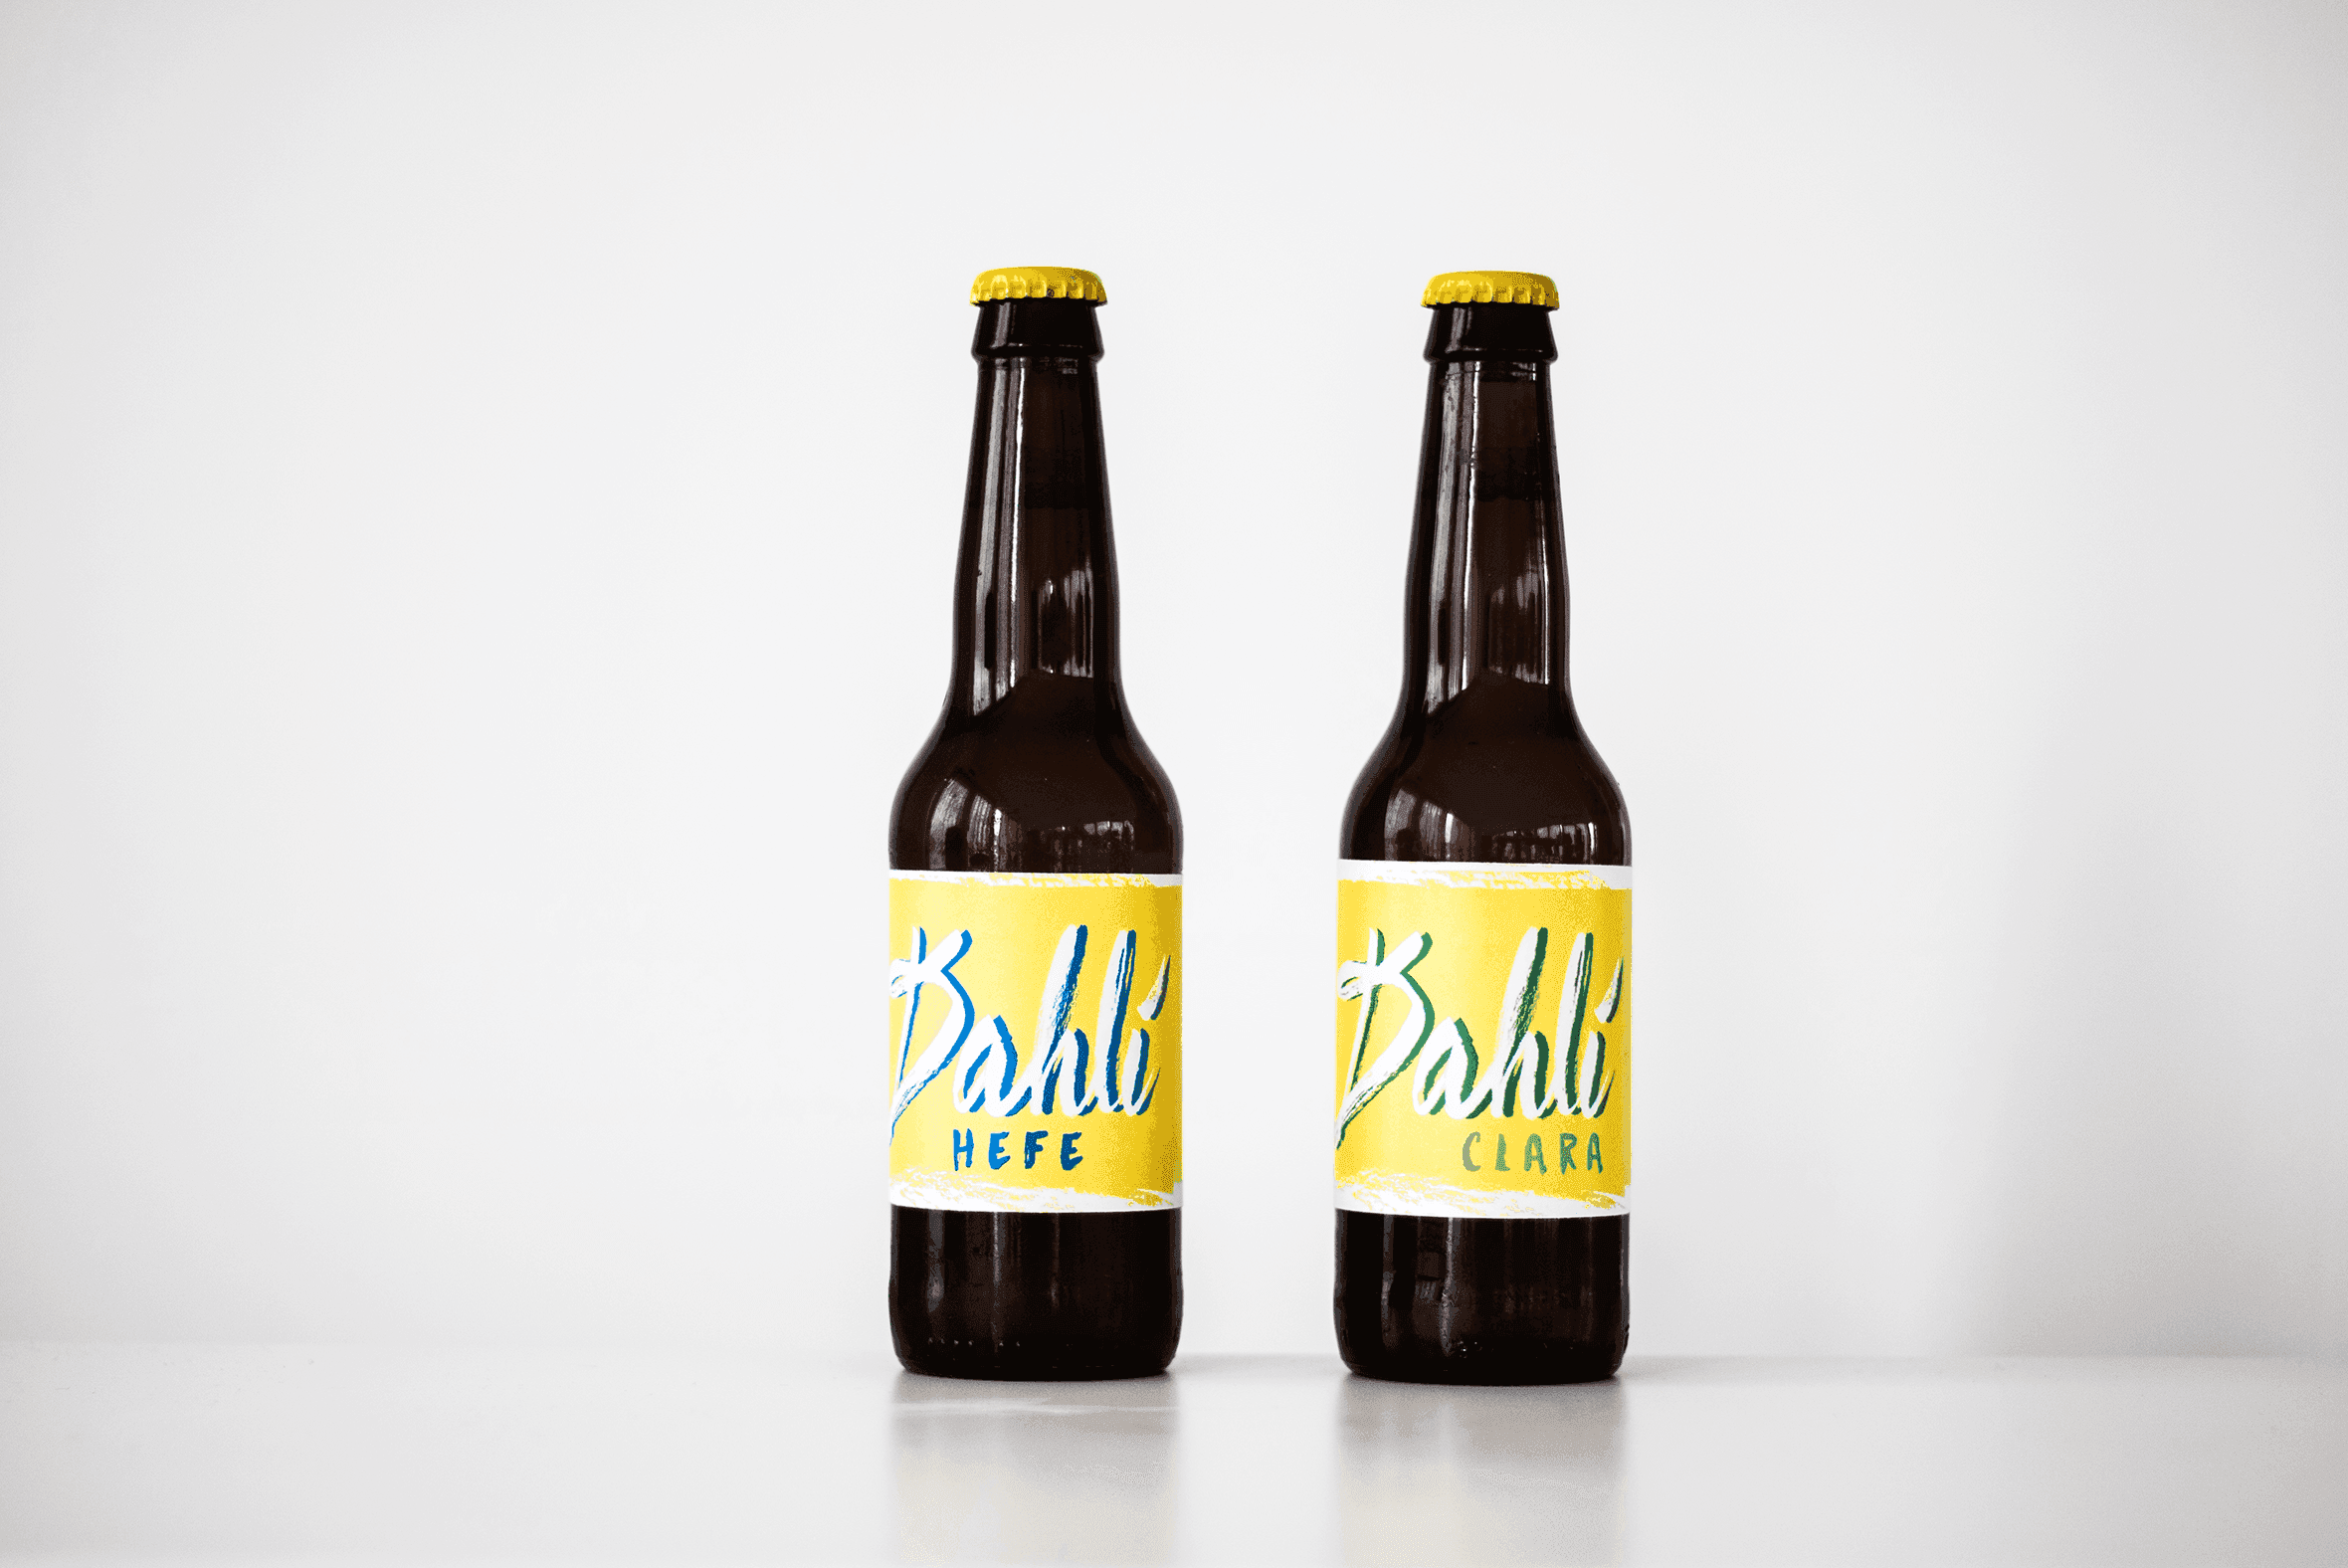 Bottles of Dahli beer